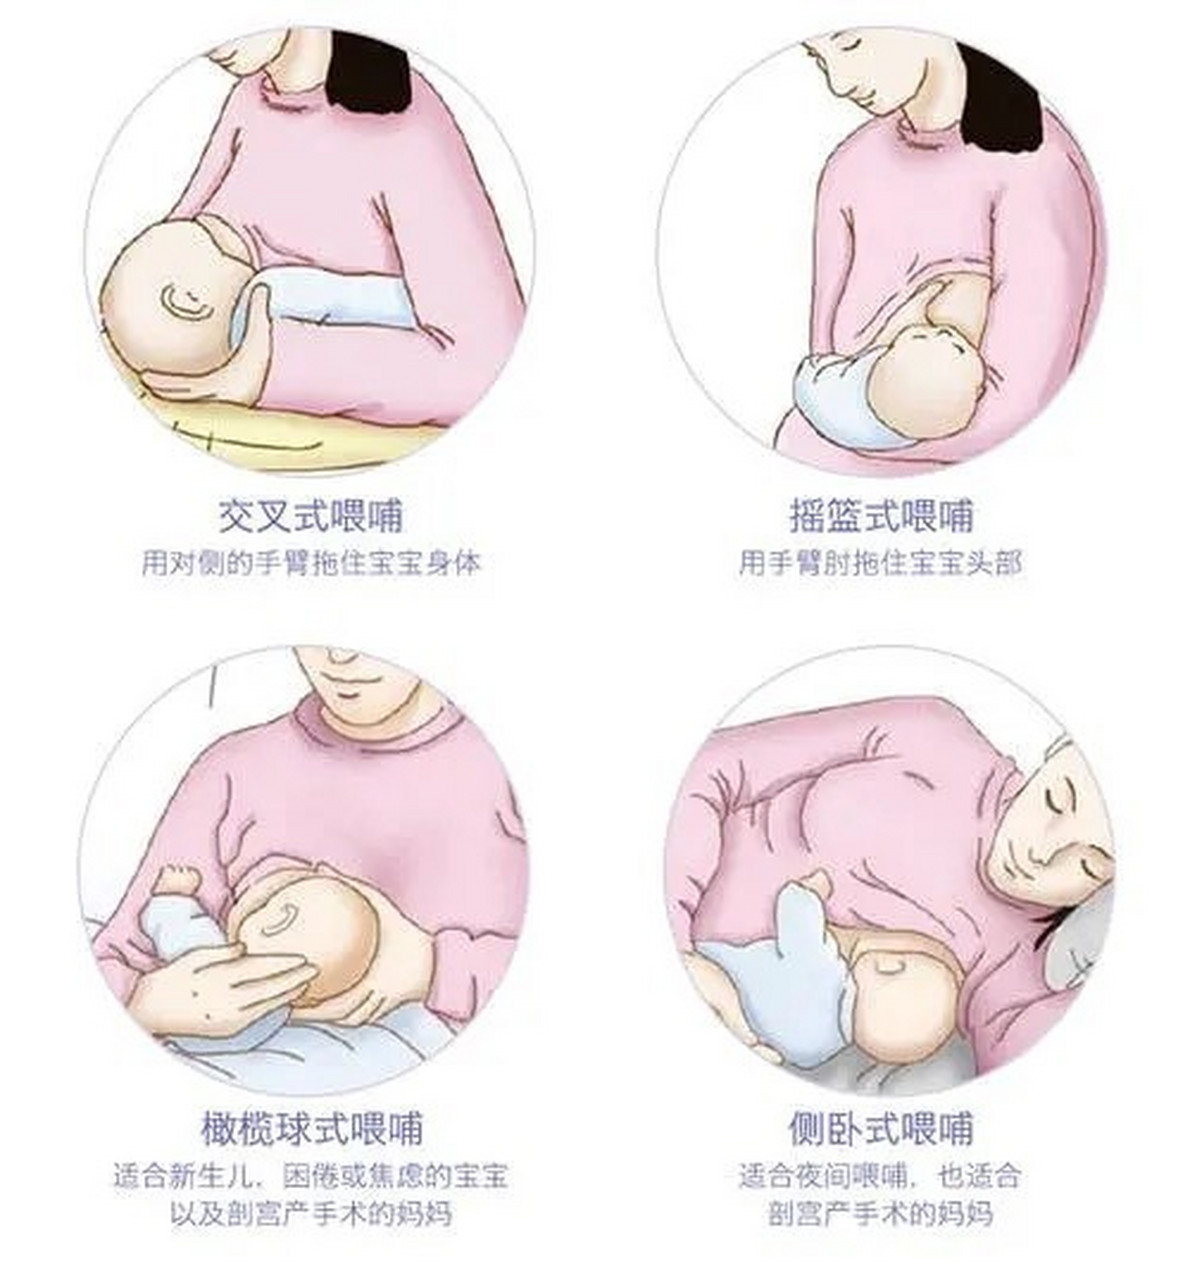 严重时伤害宝宝的健康 在摆姿势喂奶之前,妈妈